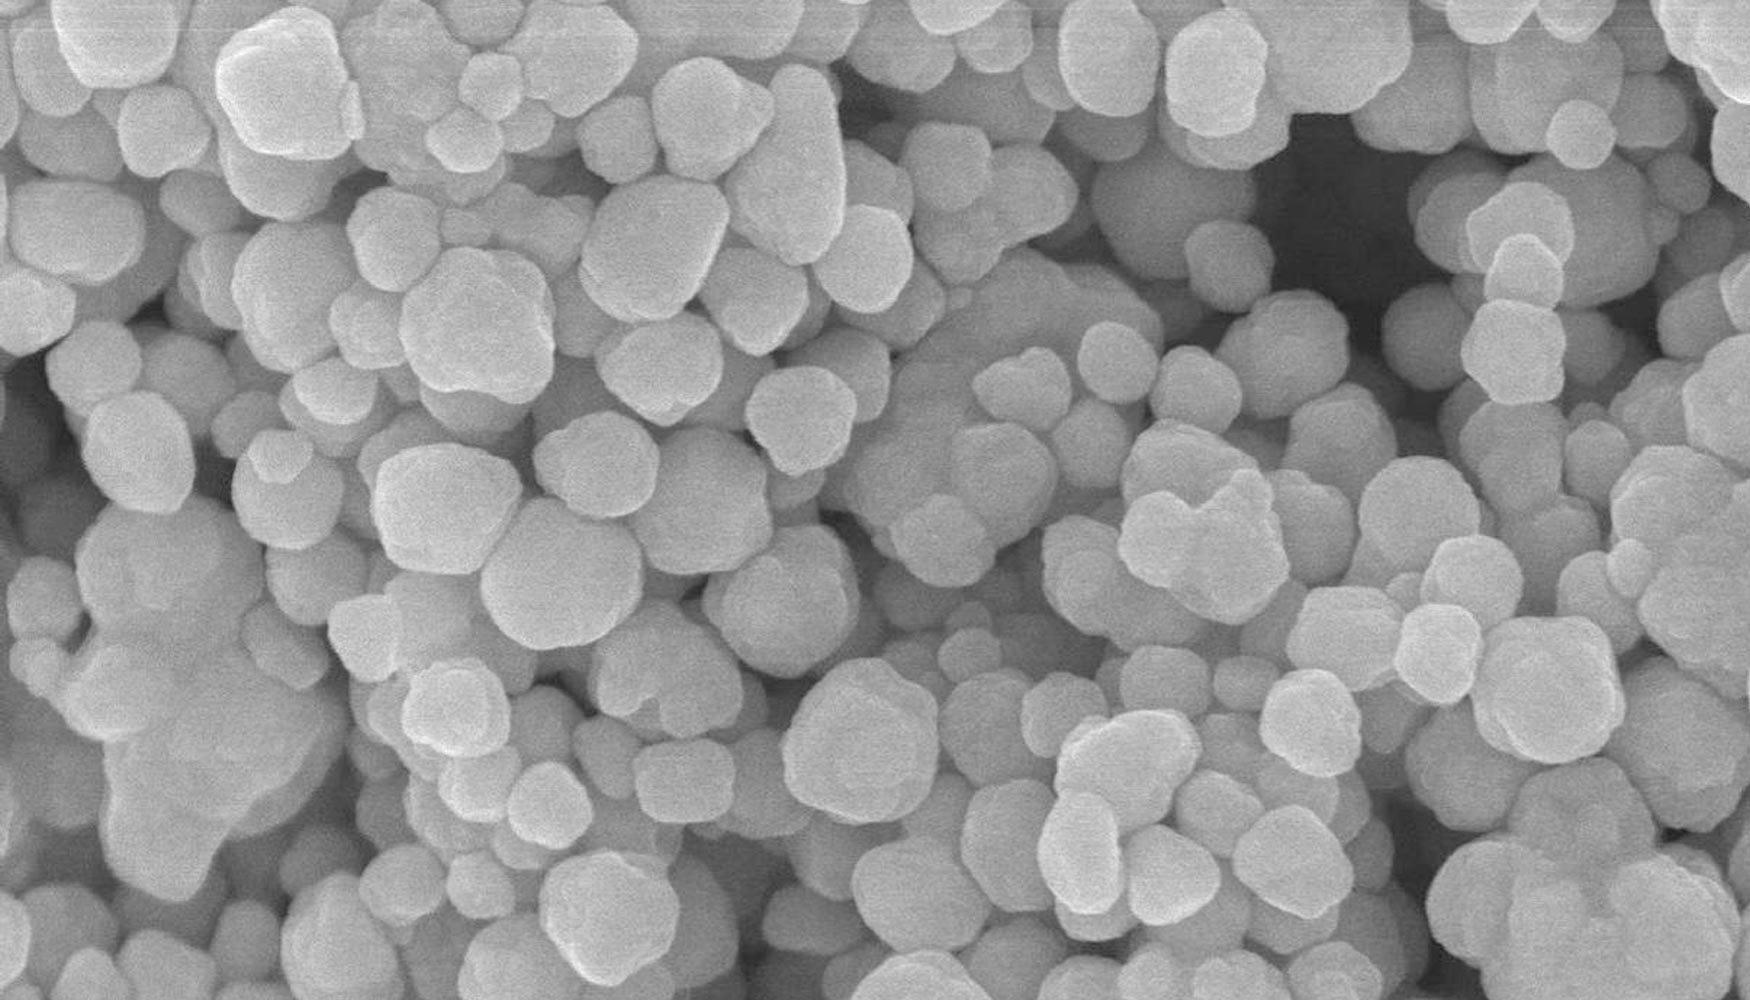 Nanopartculas de plata